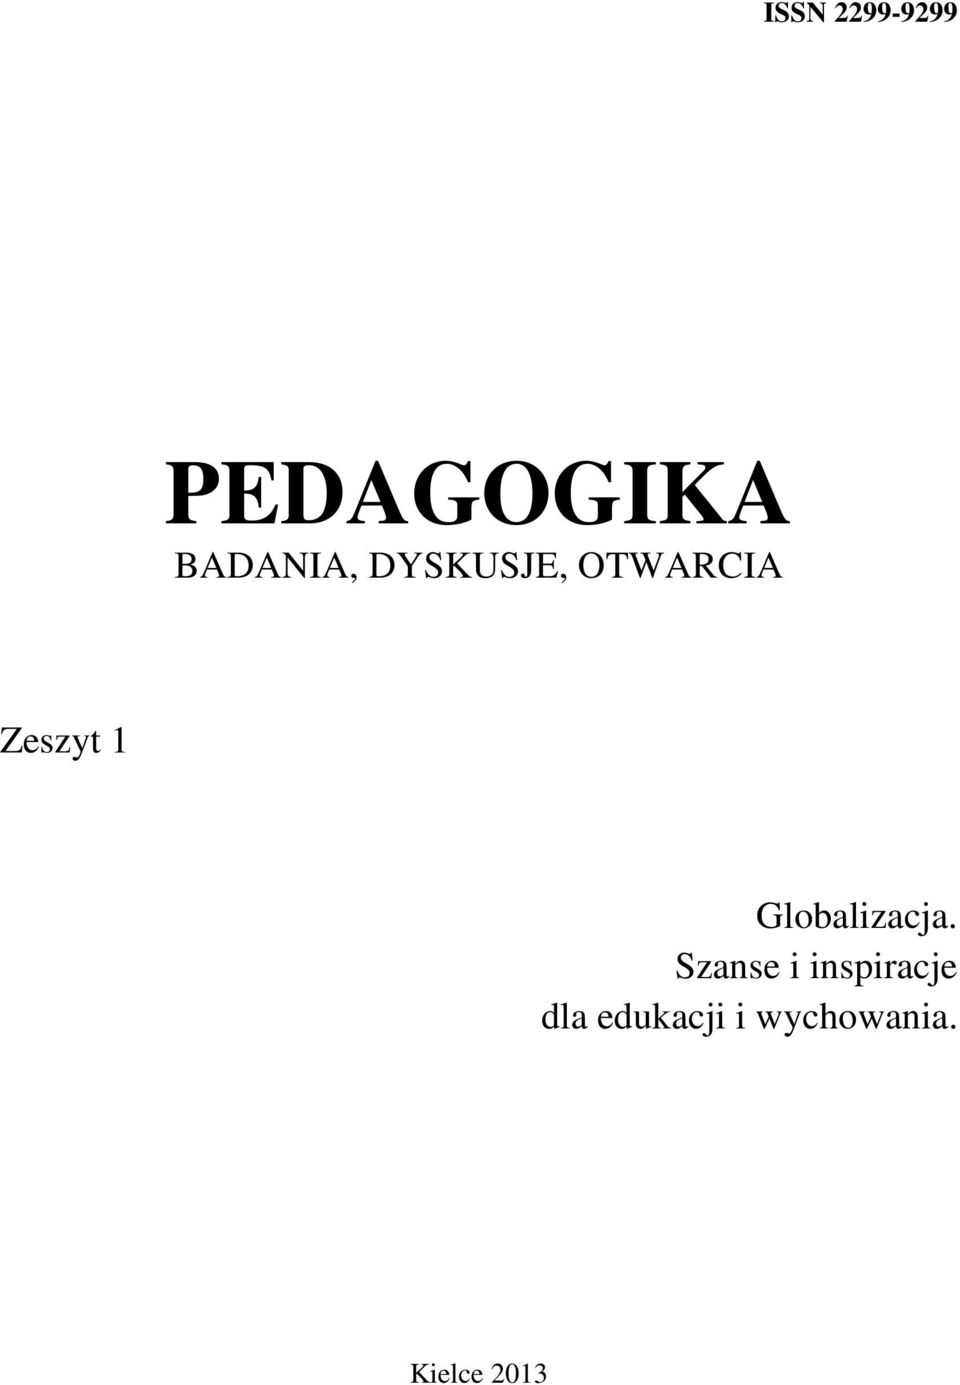 ISSN 2299-9299 PEDAGOGIKA BADANIA, DYSKUSJE, OTWARCIA